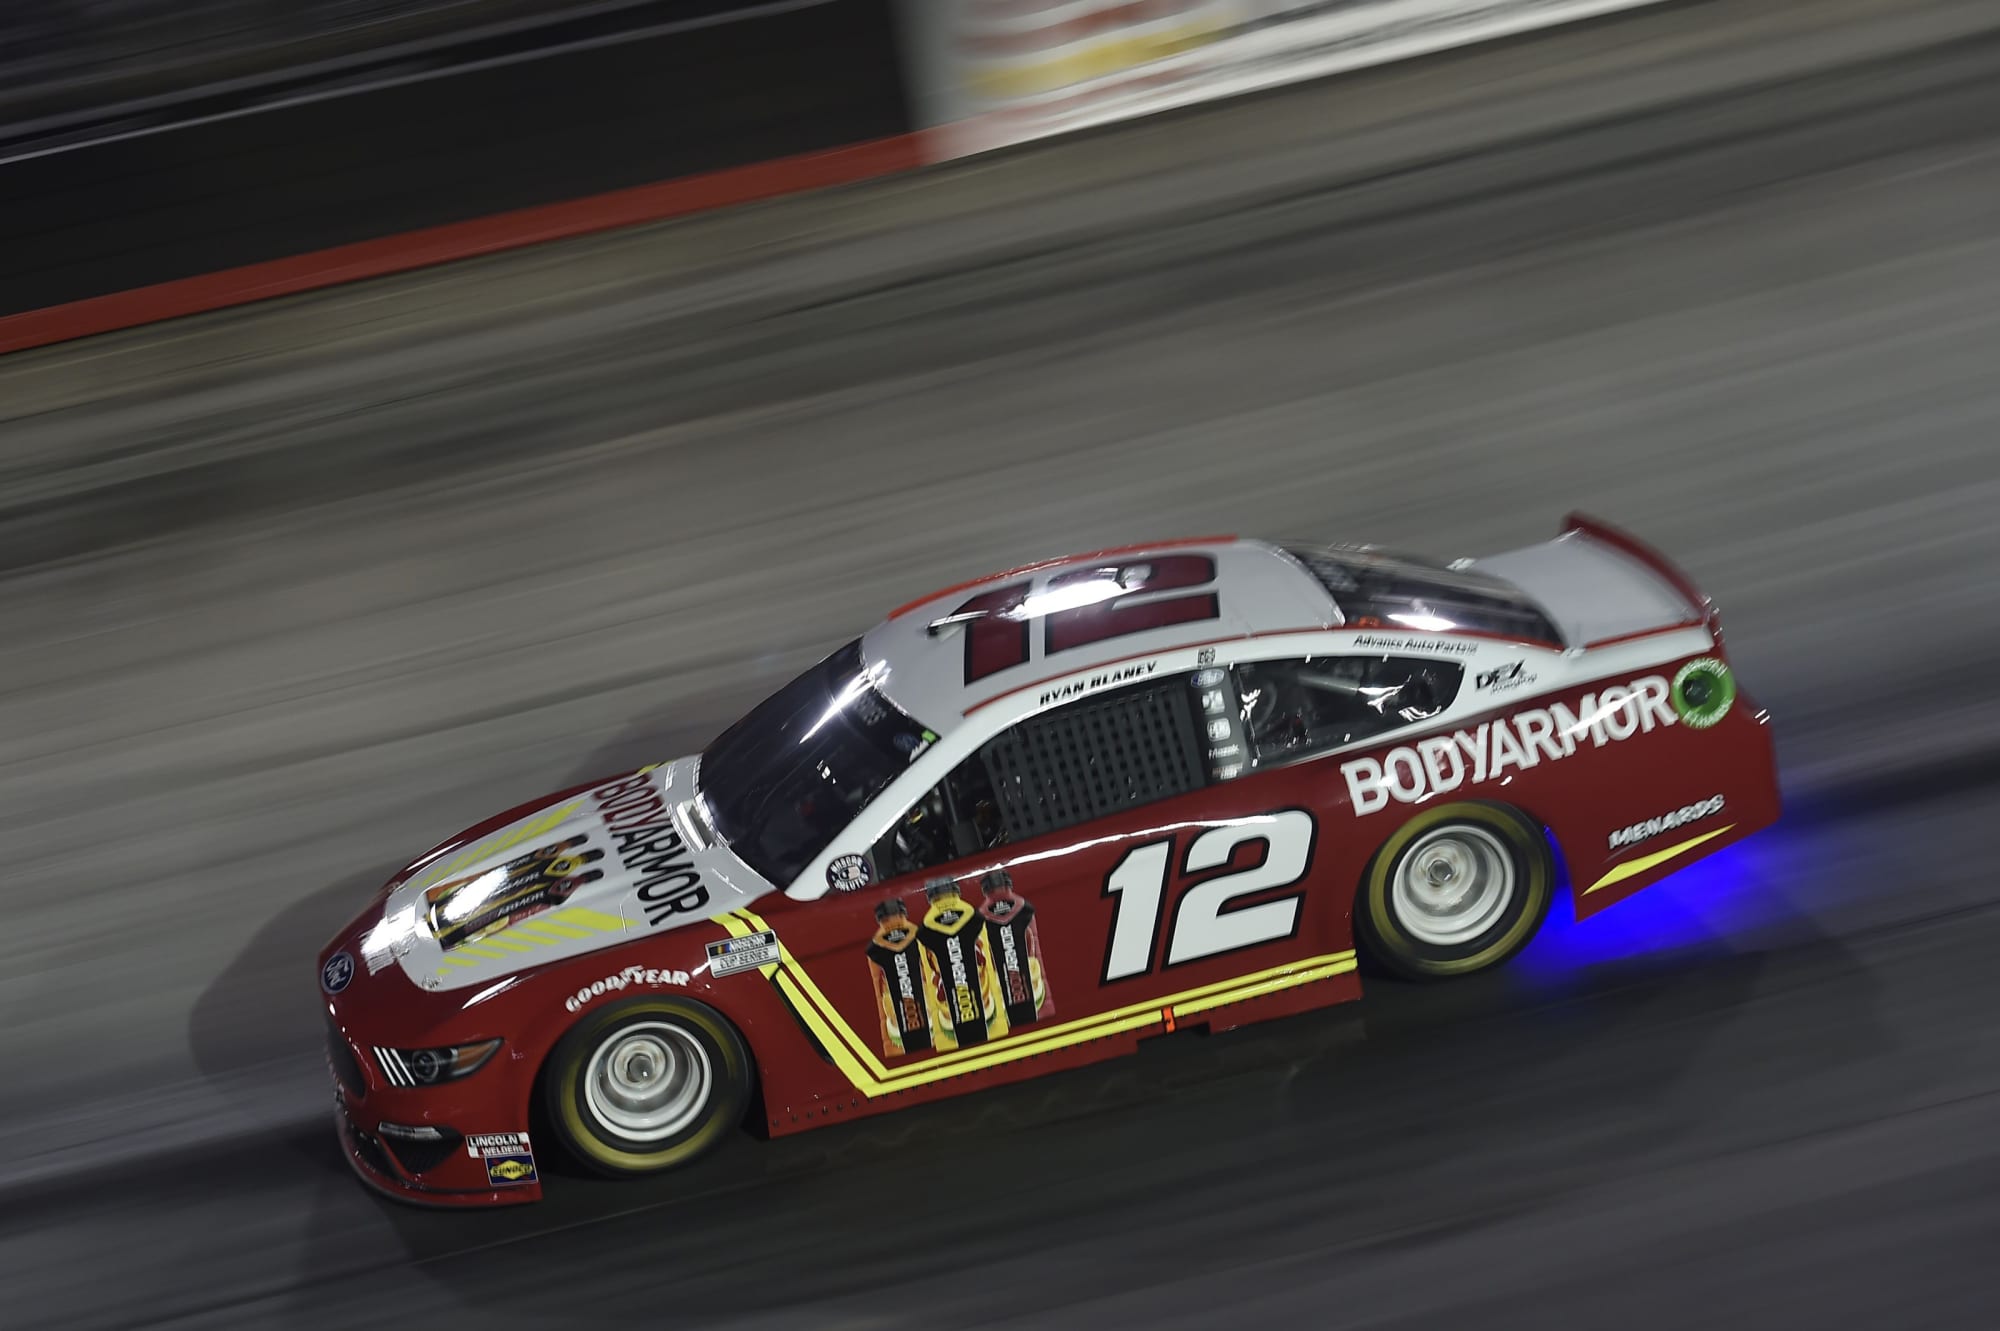 NASCAR Ryan Blaney's Daytona BODYARMOR paint scheme revealed